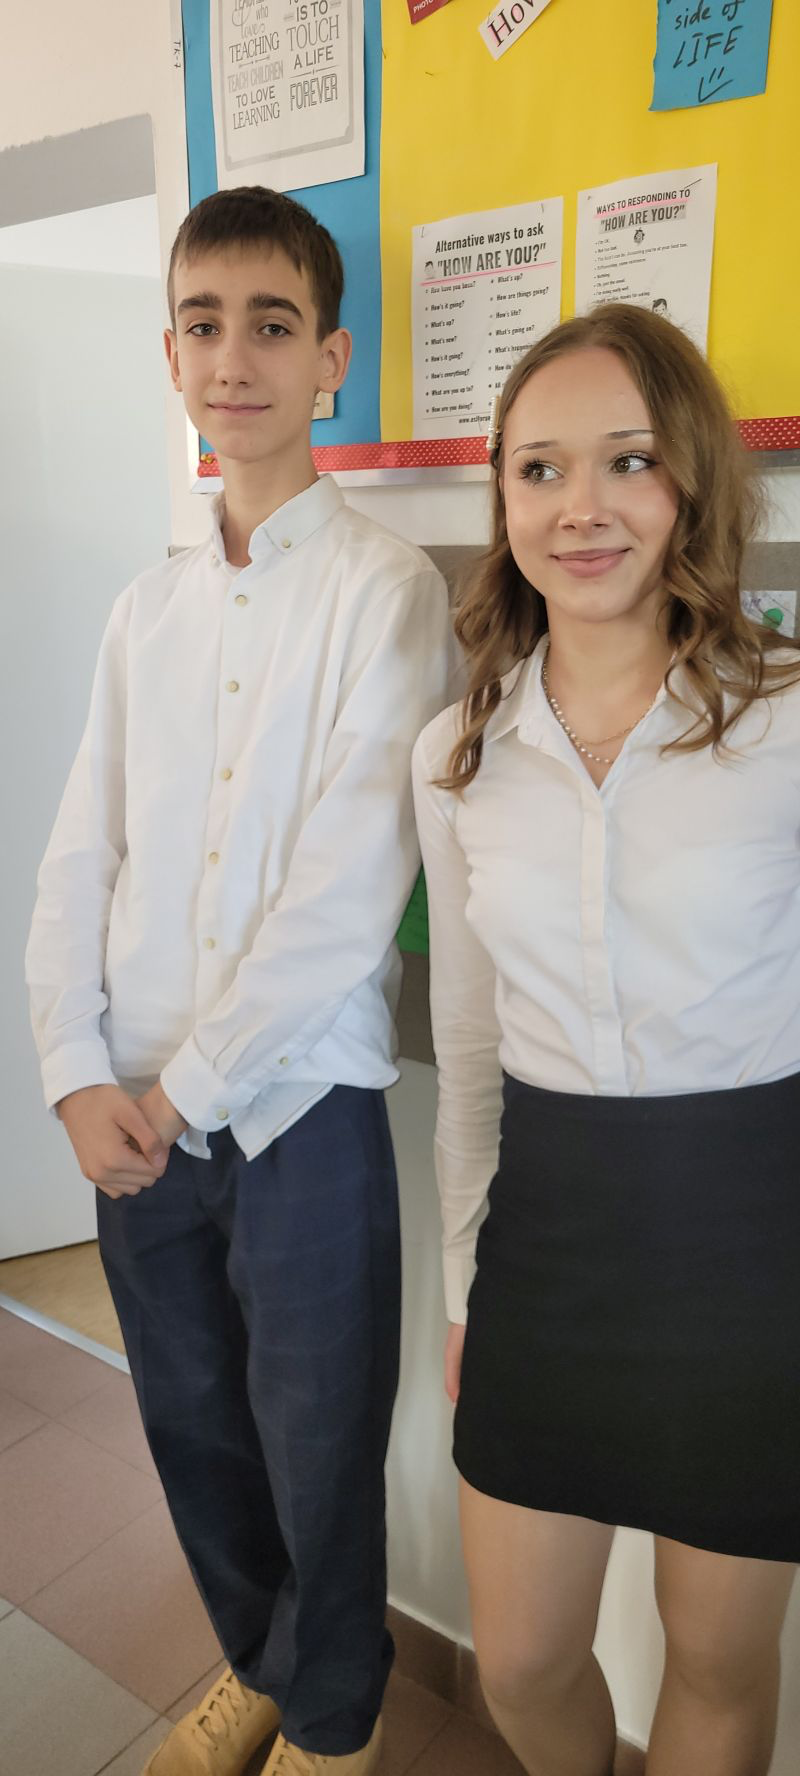 Dwóch młodych ludzi w eleganckich ubraniach stoi obok siebie; chłopak w białej koszuli i granatowych spodniach, dziewczyna w białej koszuli i czarnej spódnicy.